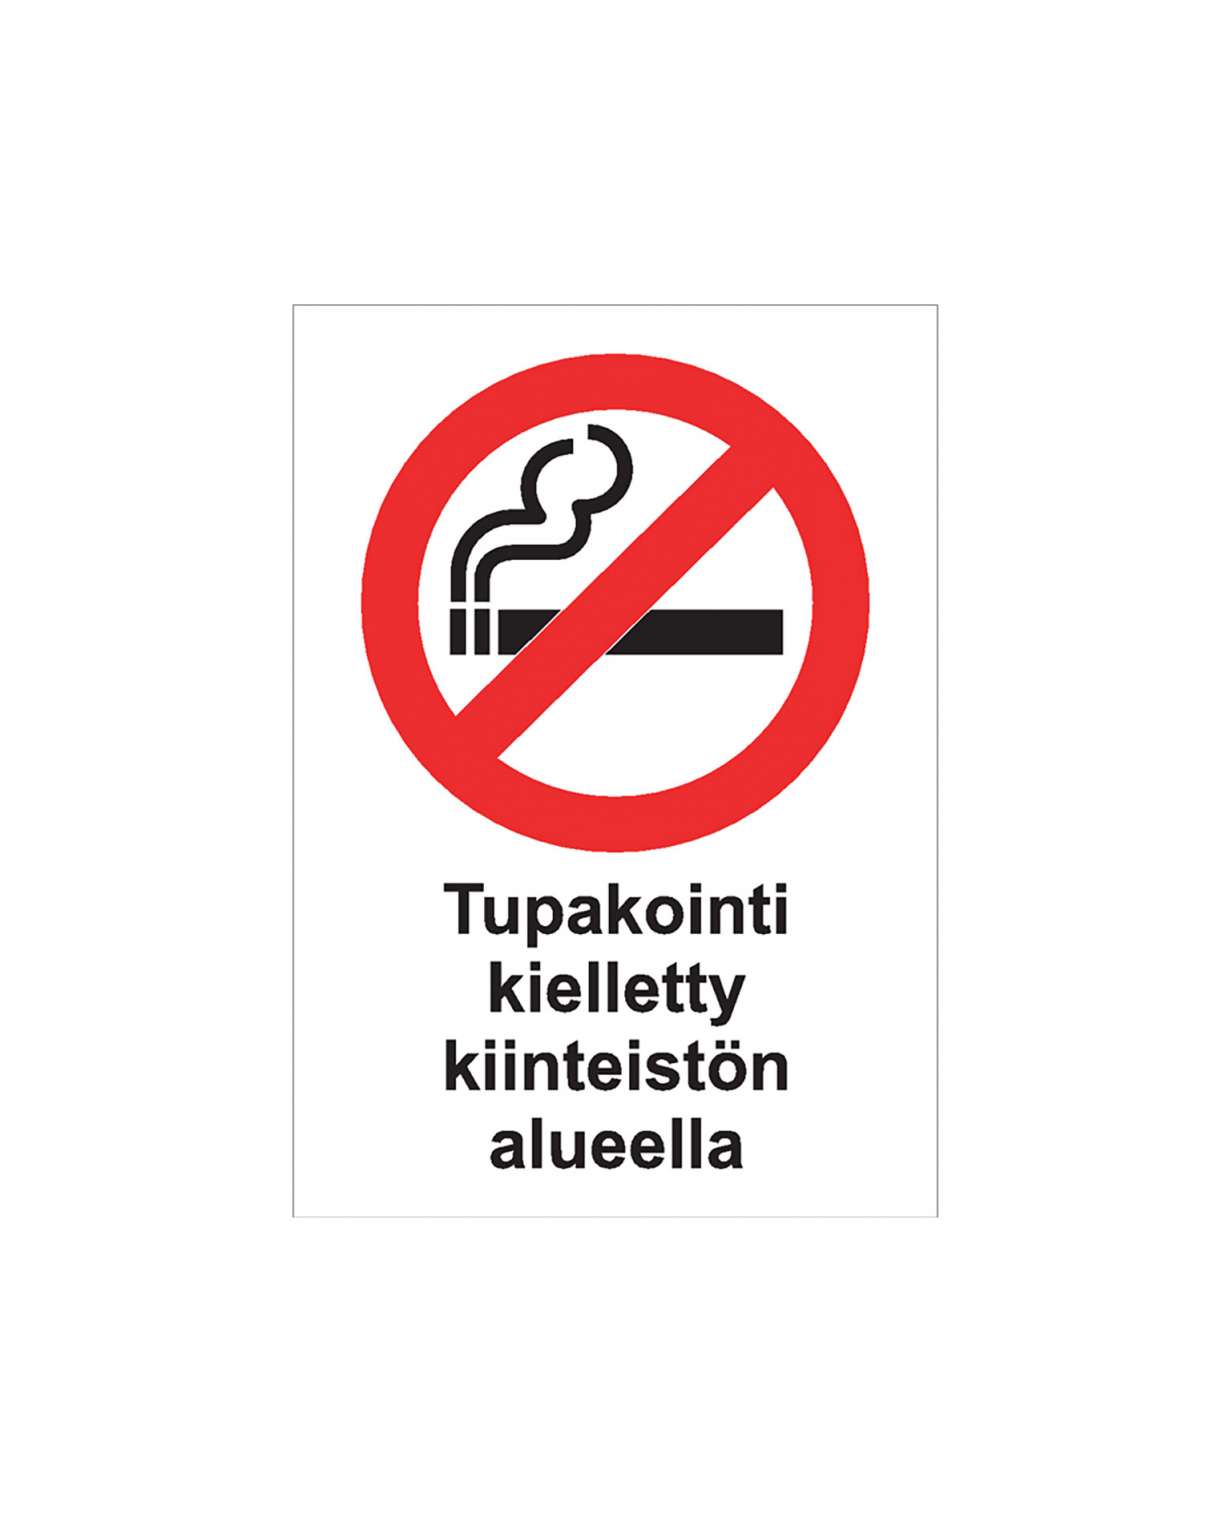 Tupakointi kielletty kiinteistön alueella, Magneetti, 200x300 mm